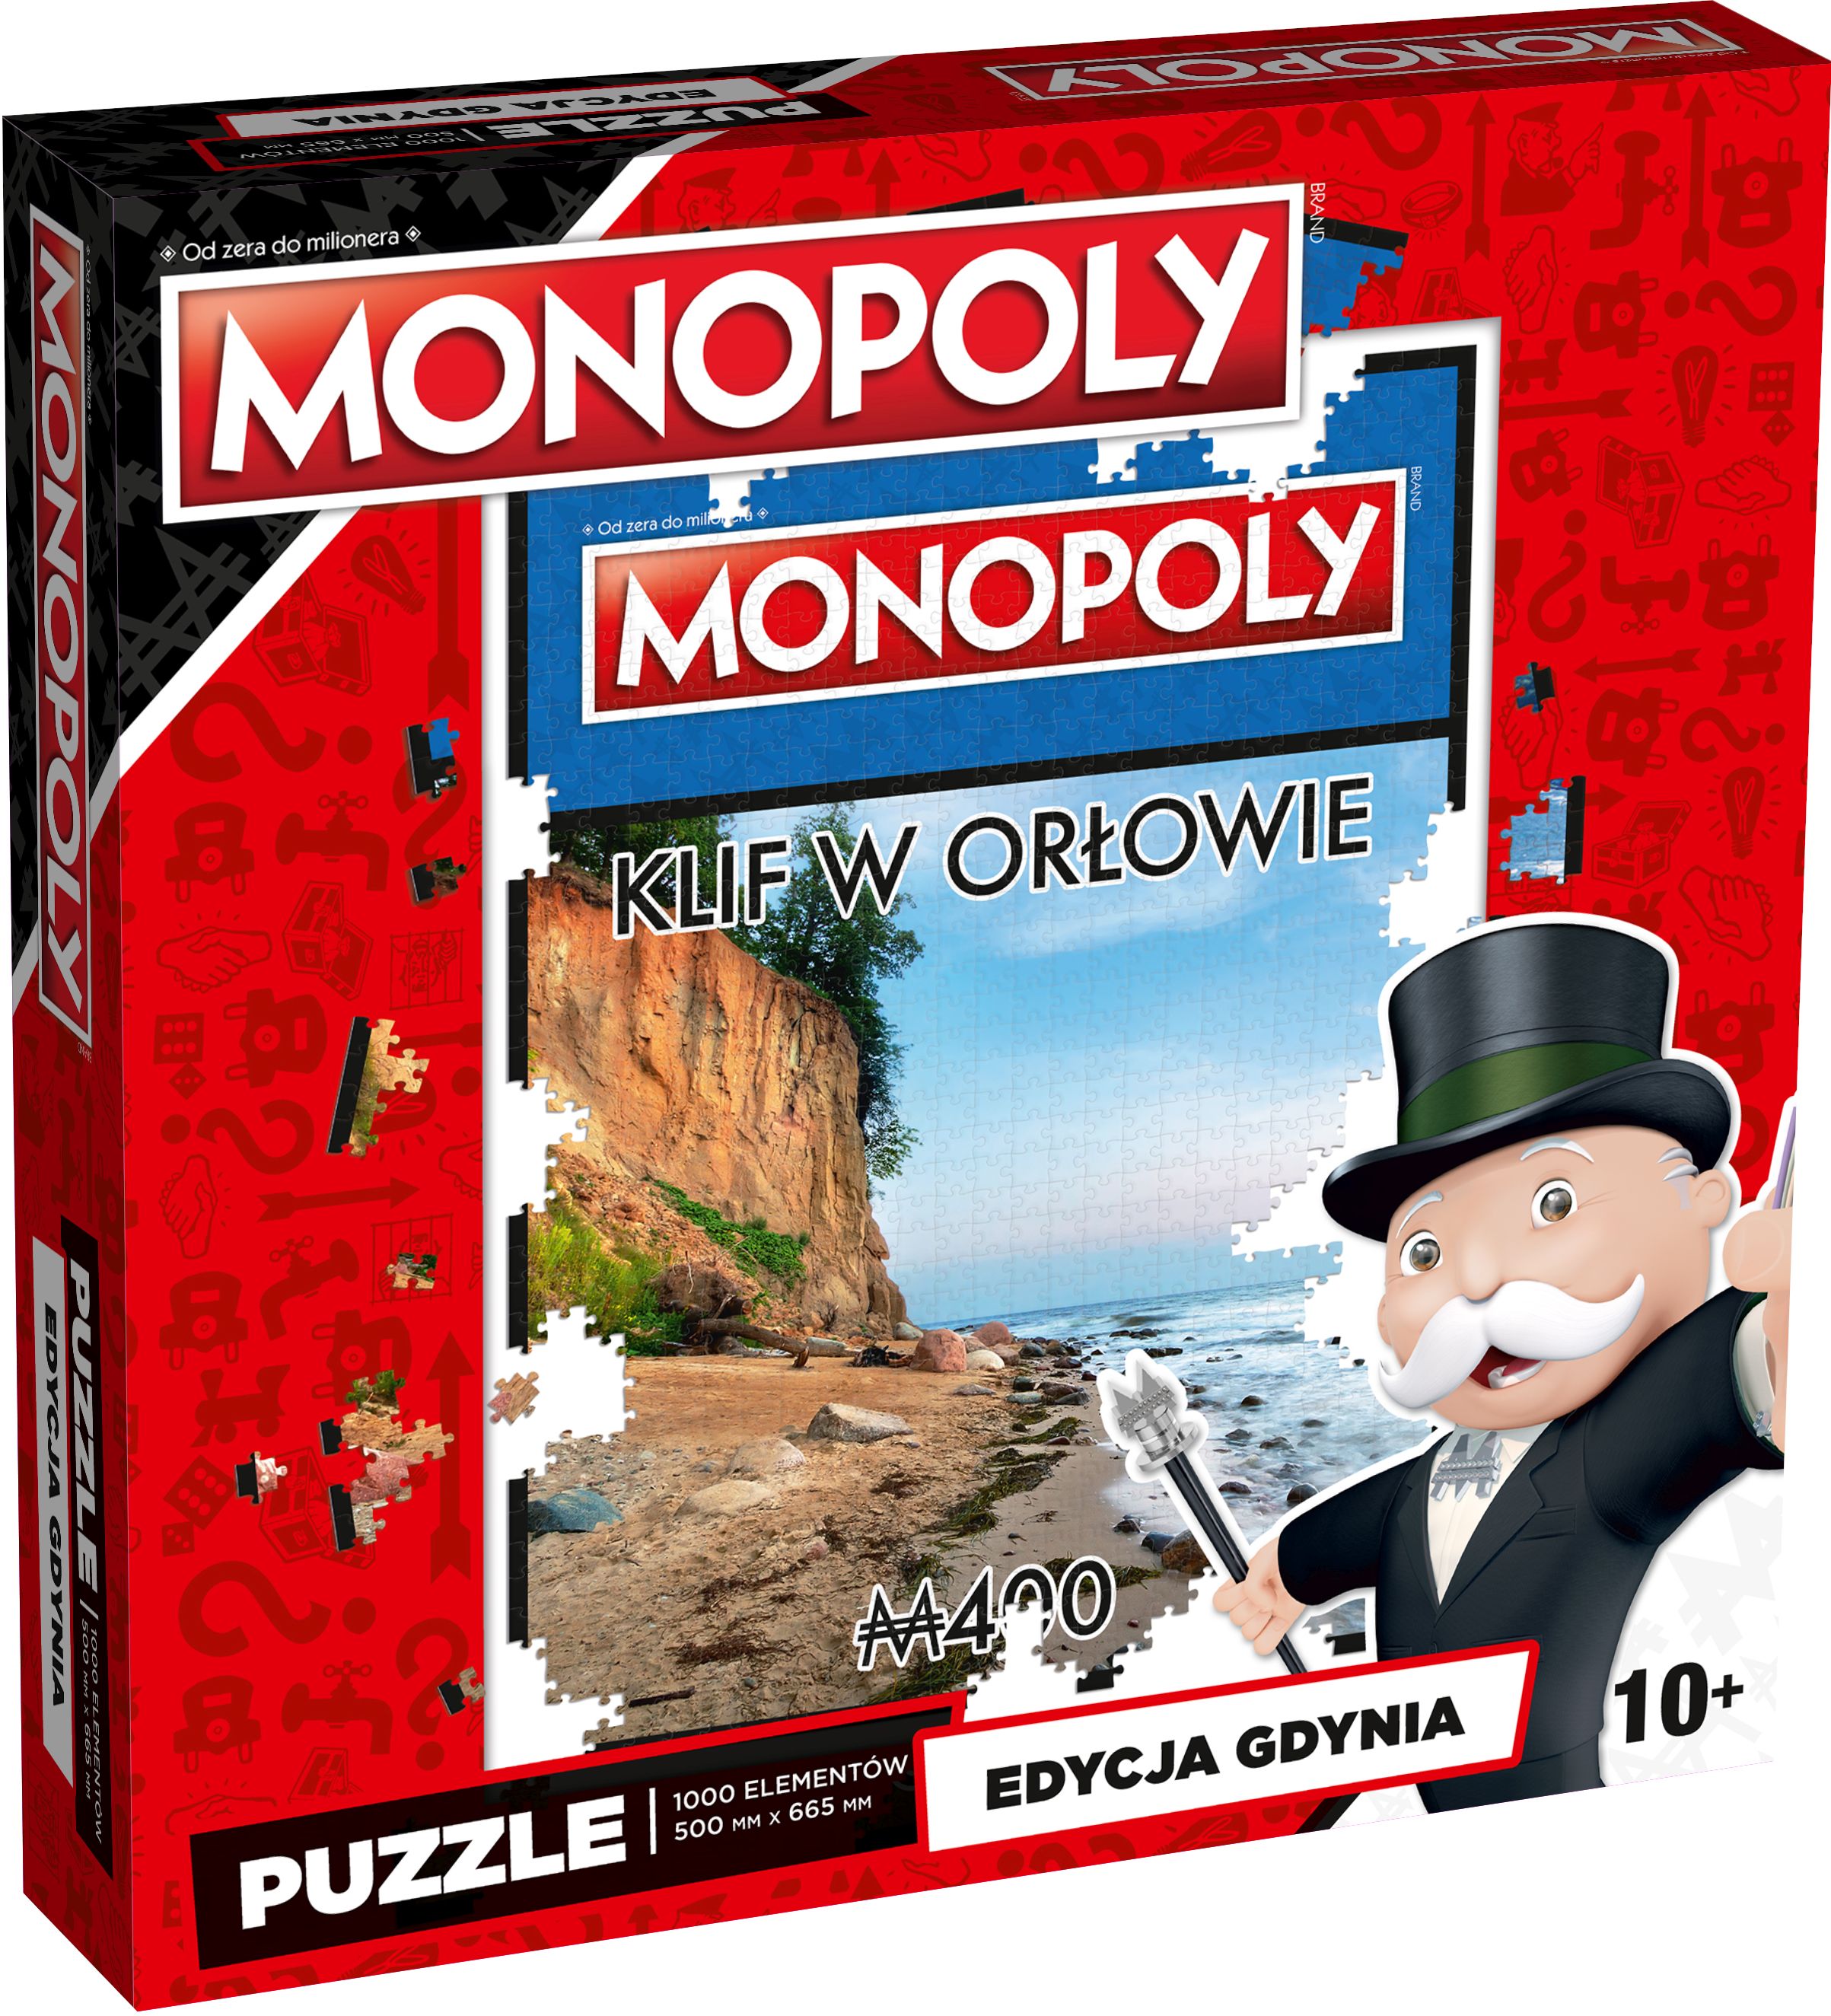 Puzzle: Monopoly - Edycja Gdynia - Klif w Orłowie (1000 elementów)